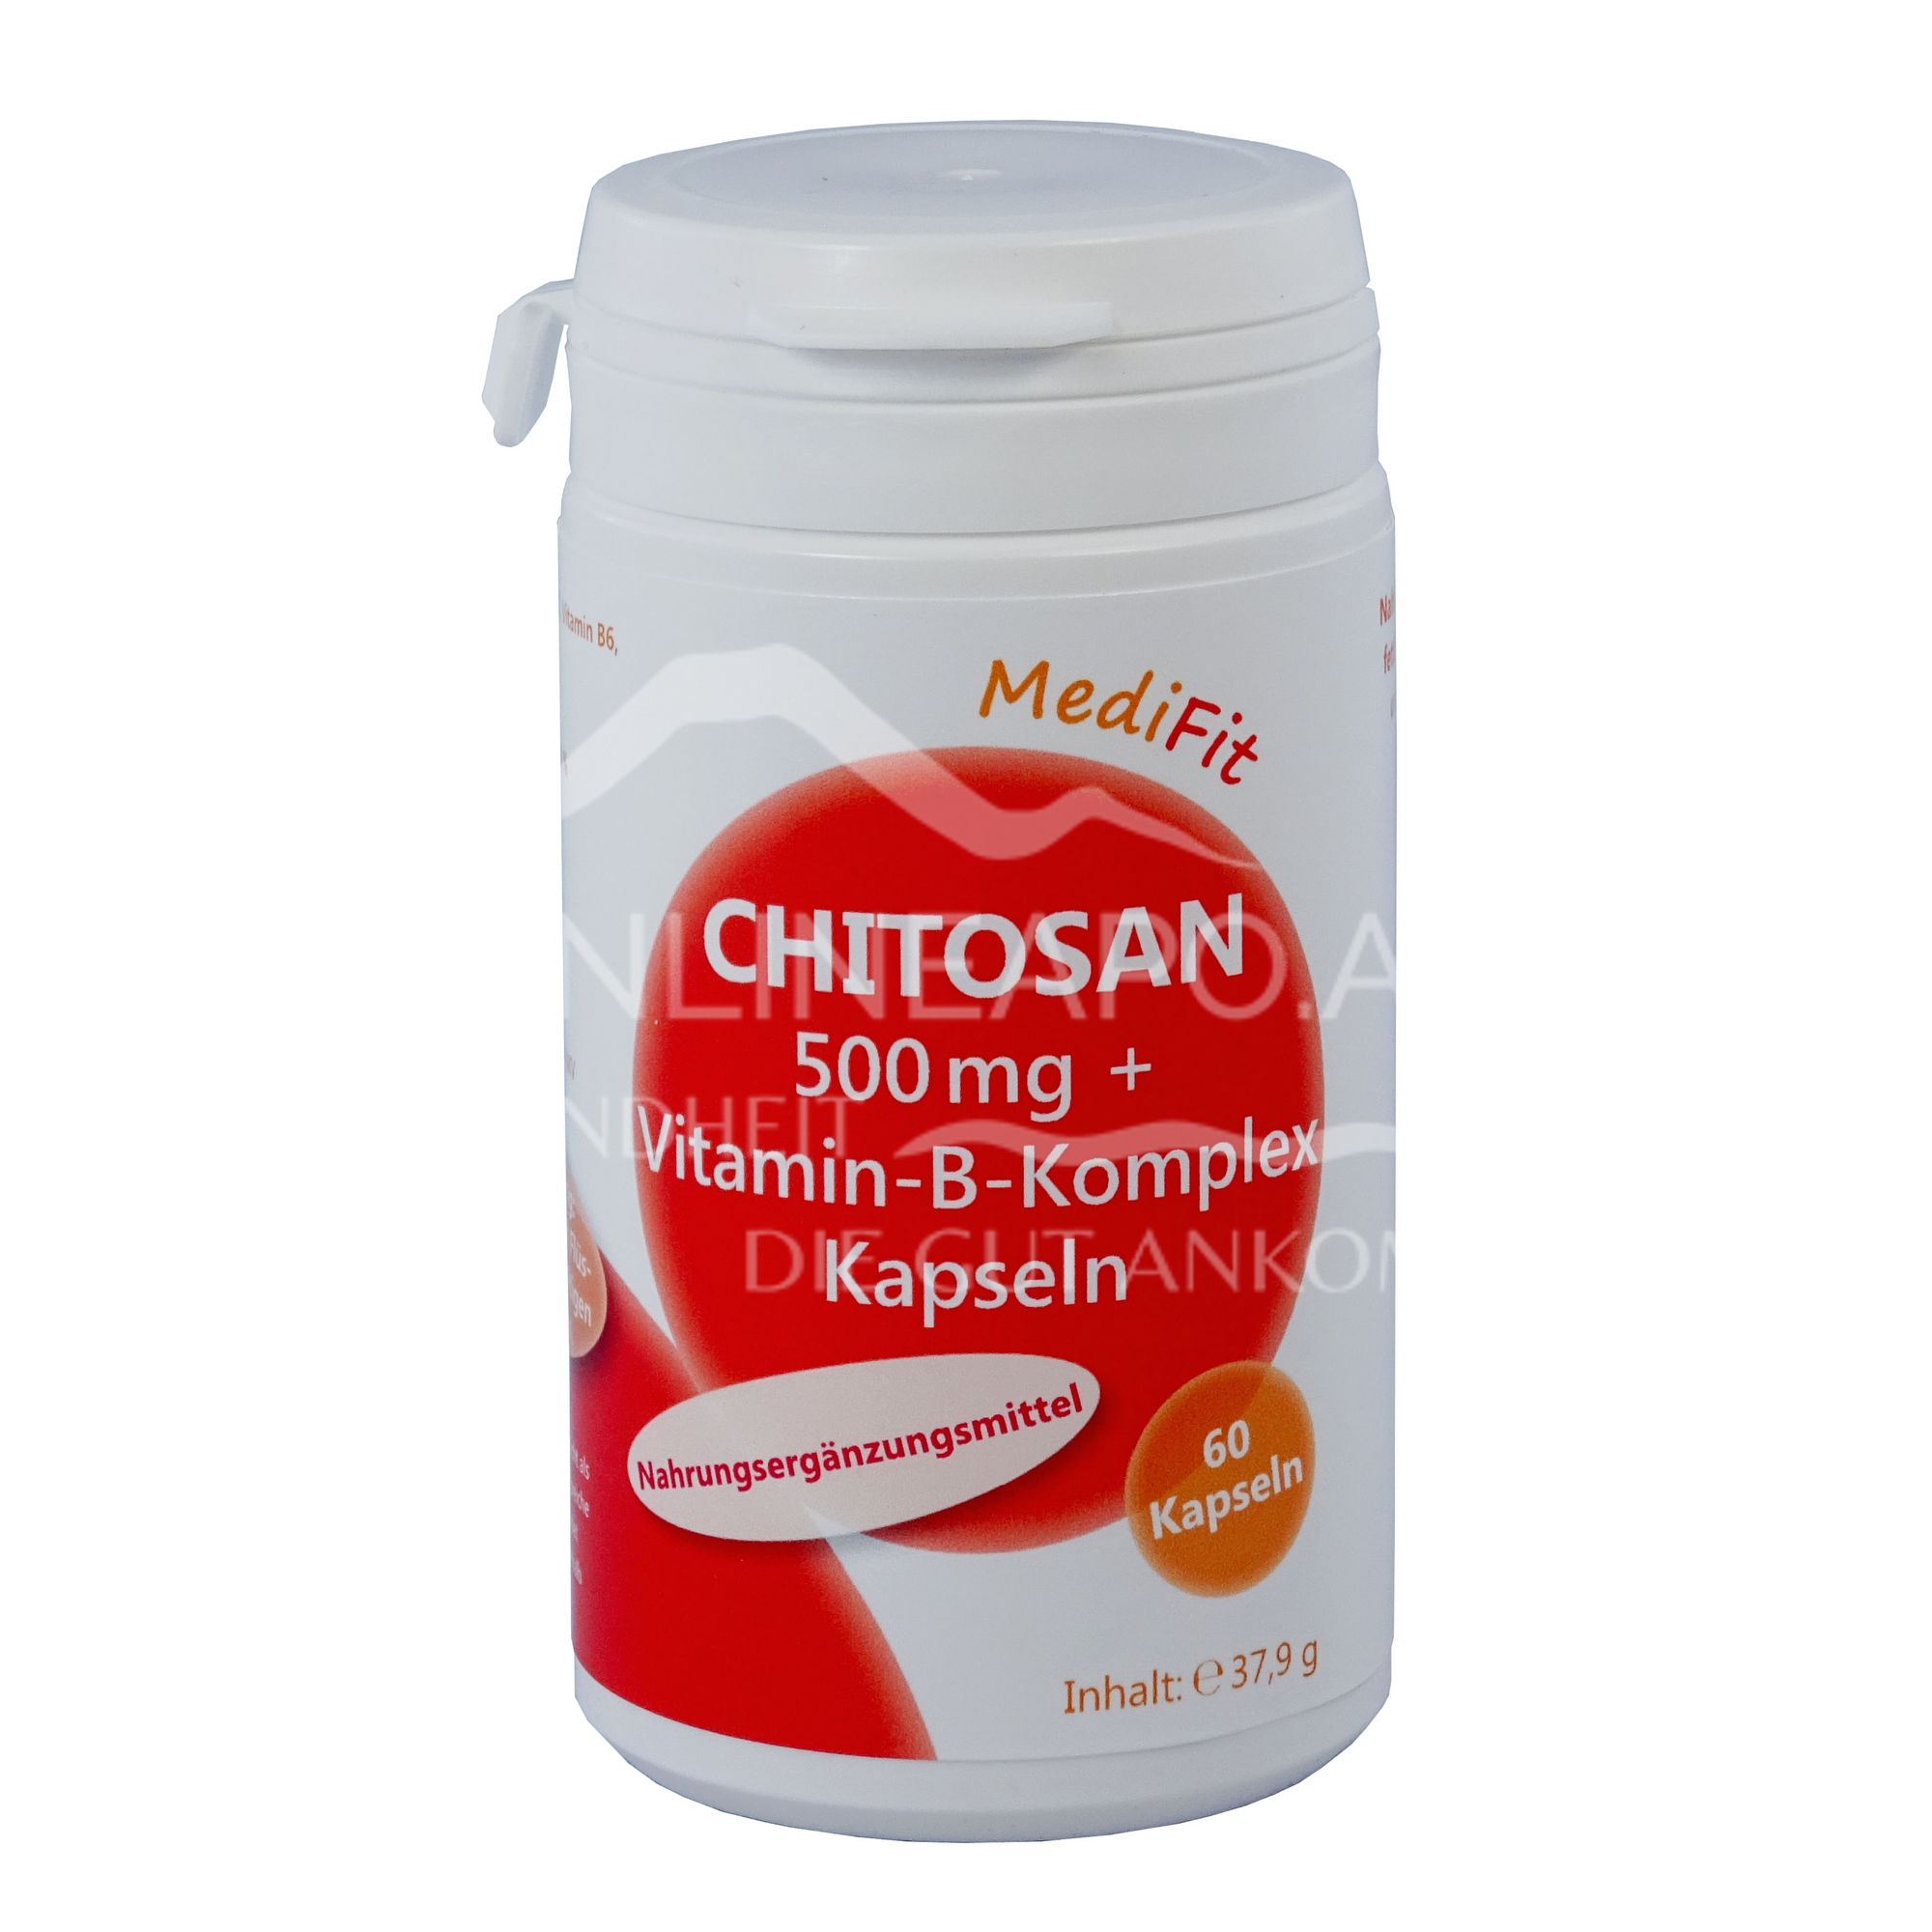 MediFit Chitosan 500 mg + Vitamin-B-Komplex Kapseln